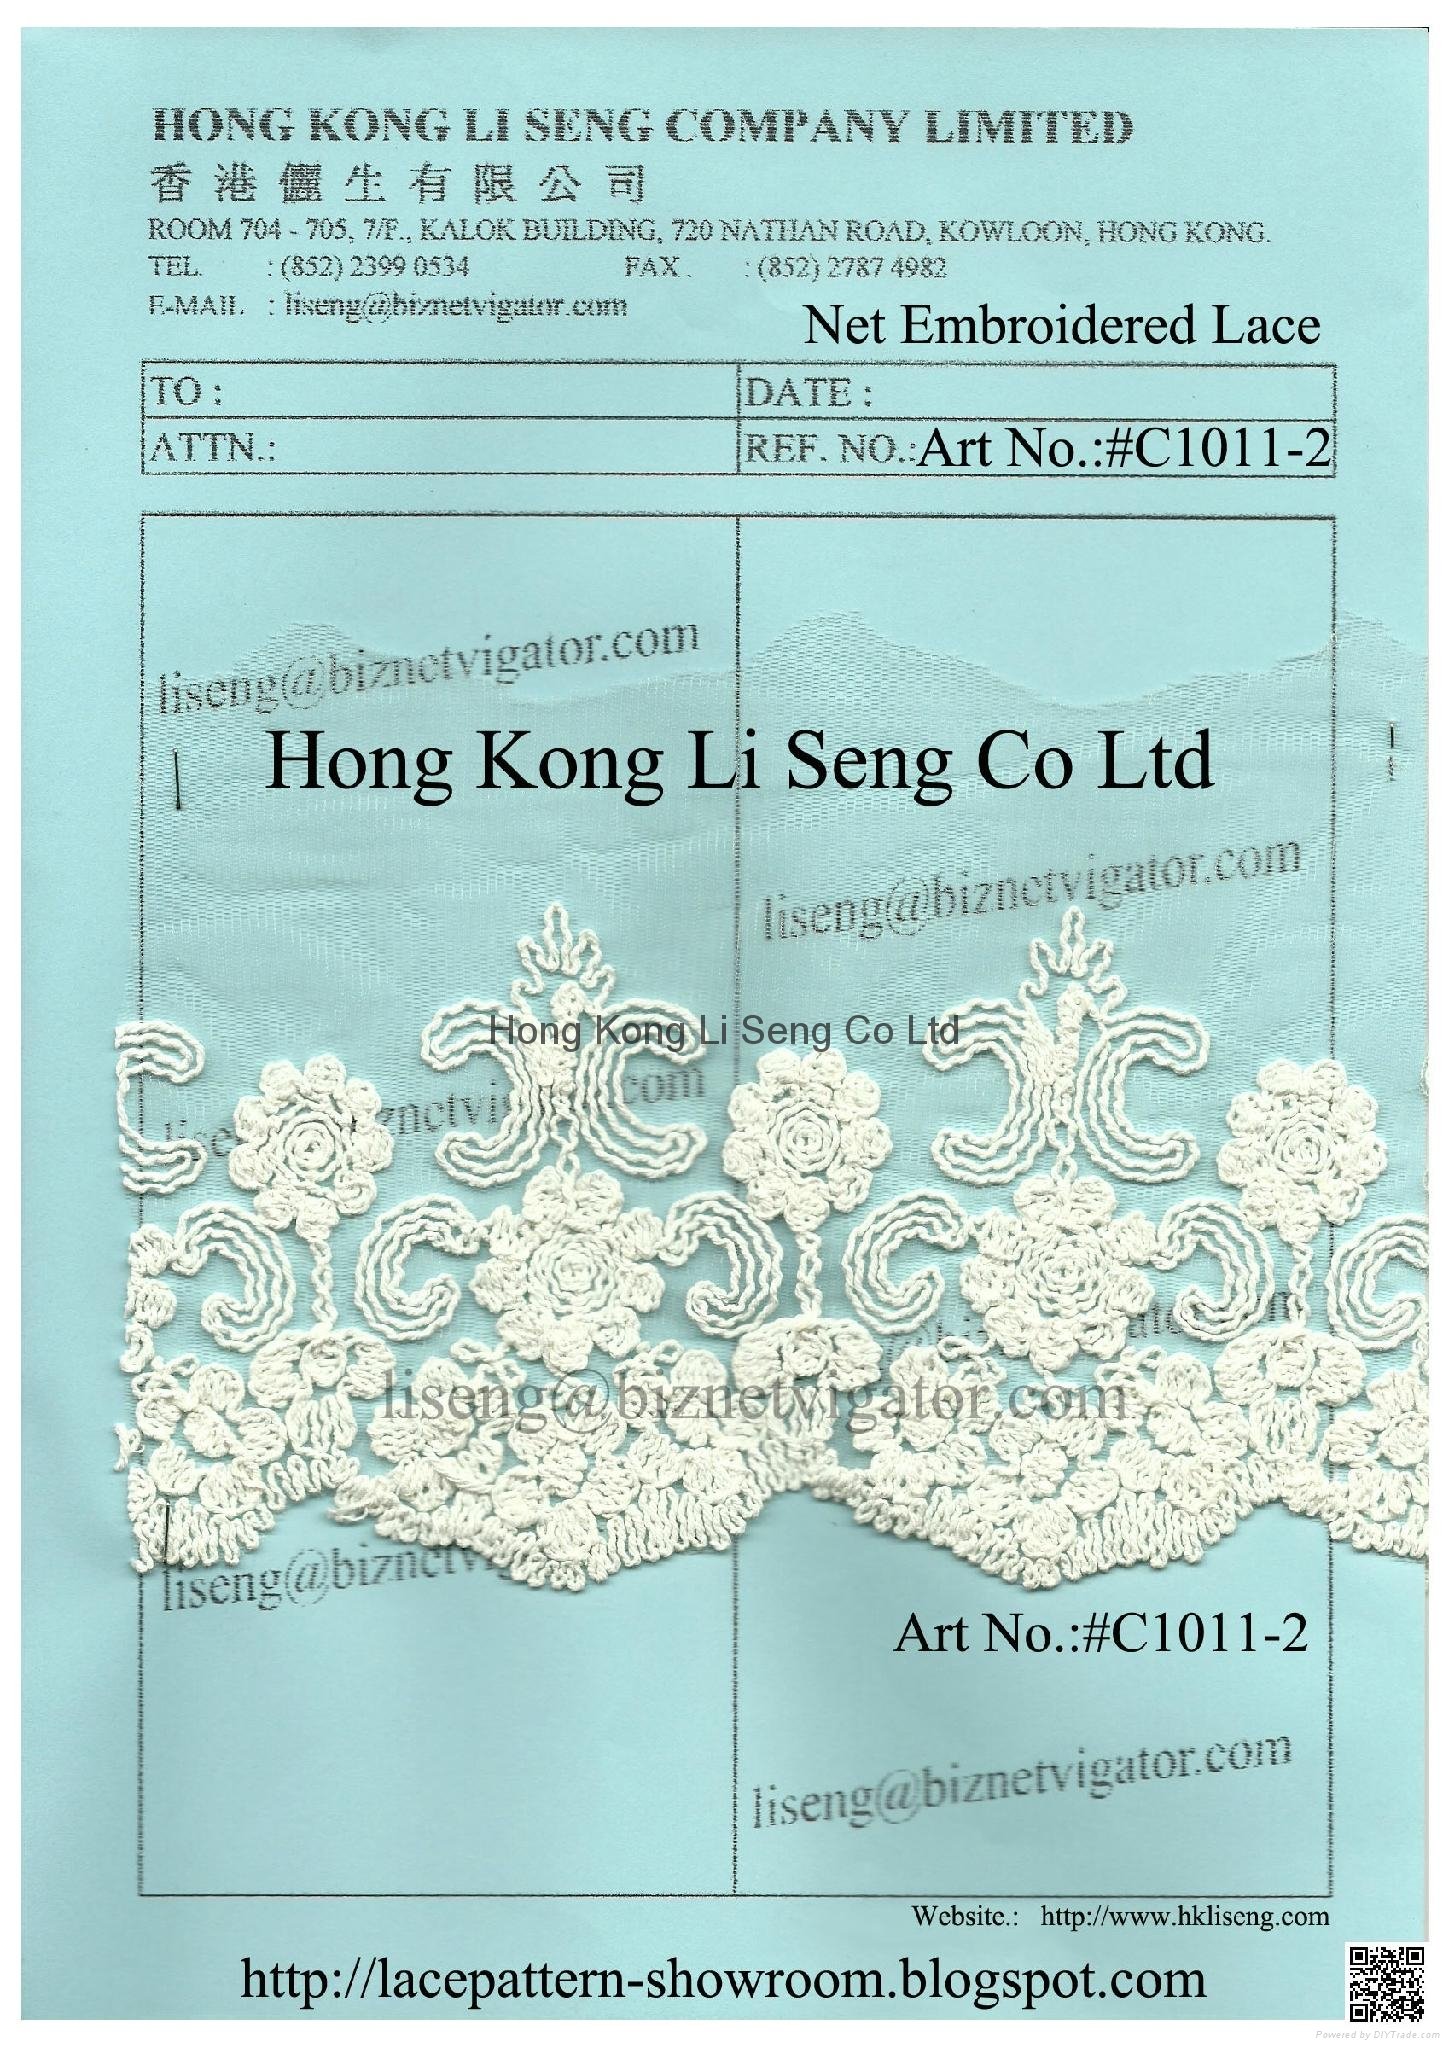 Net Lace Fabric Supplier - Hong Kong Li Seng Co Ltd 3